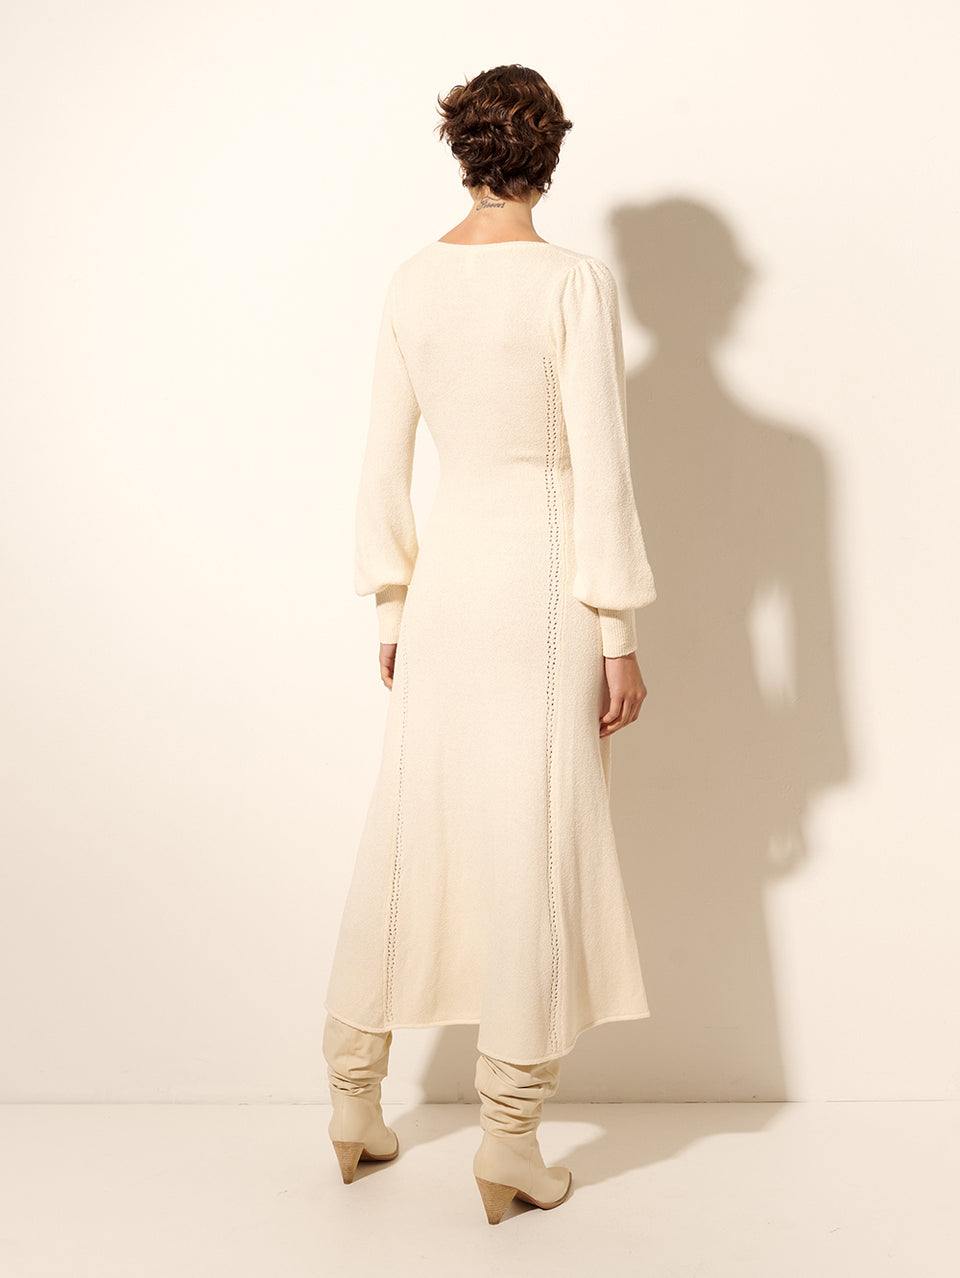 Cali Knit Dress KIVARI | Model wears cream knit midi dress back view